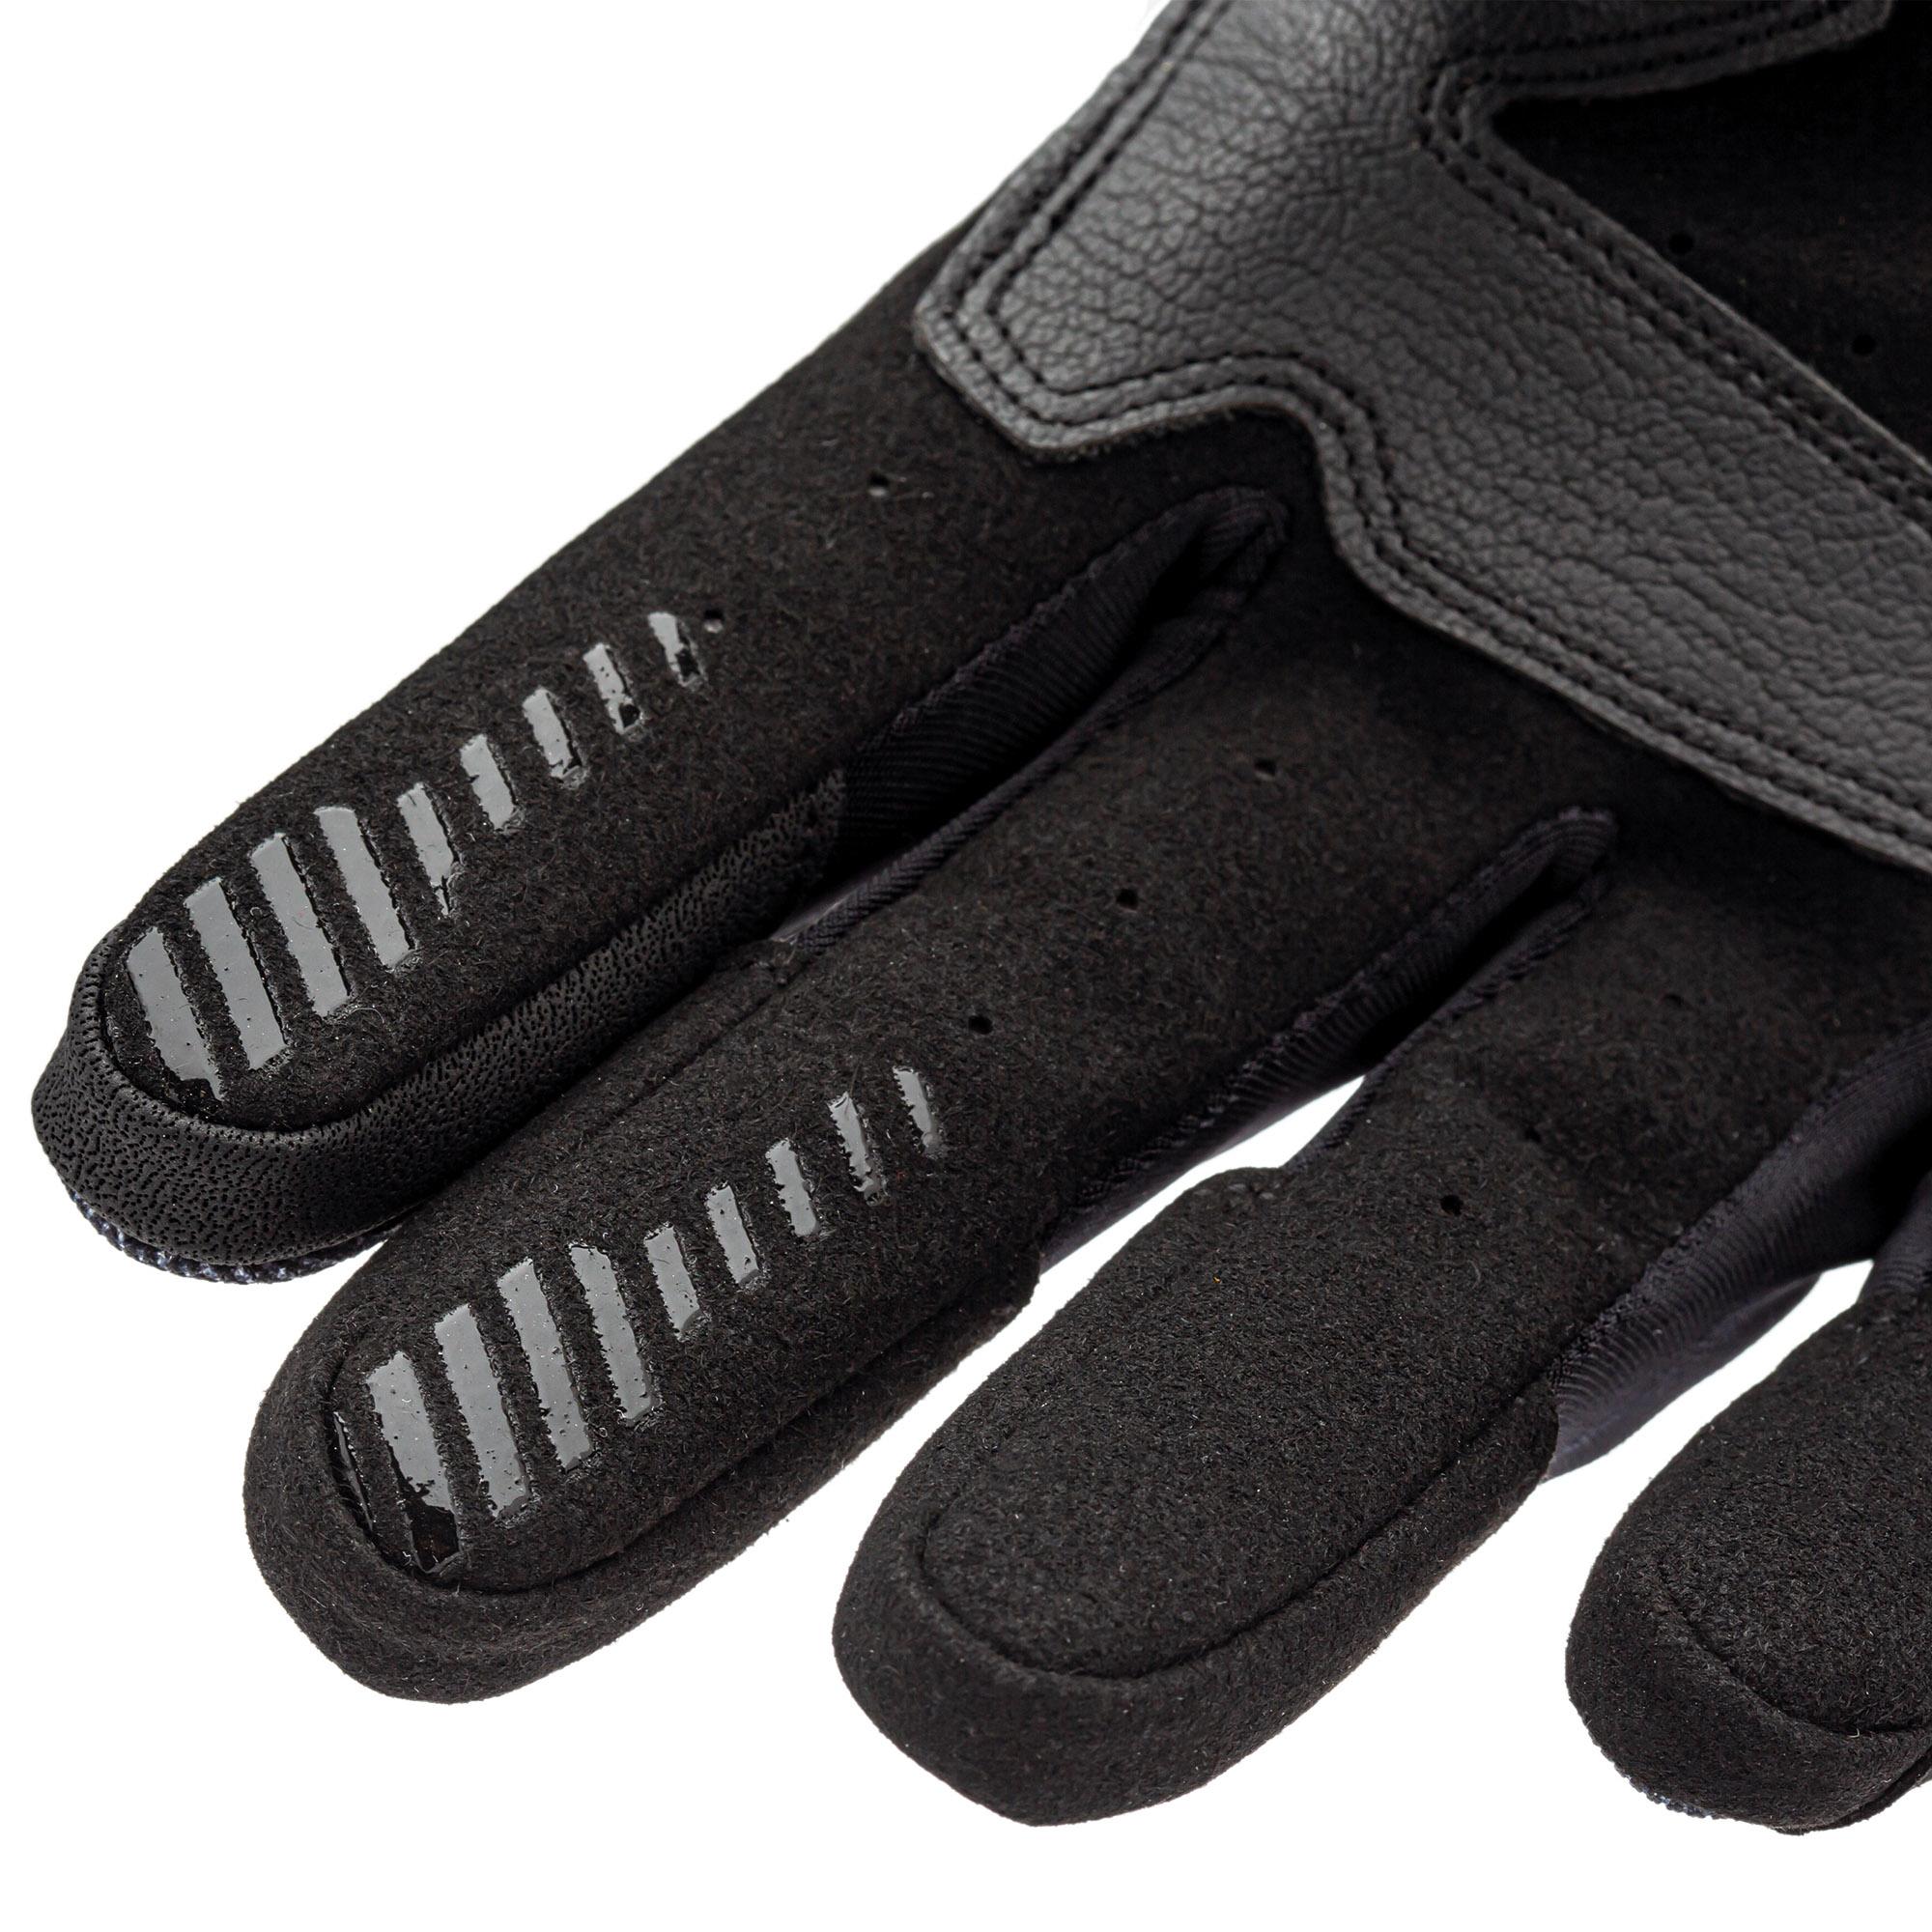 Stacca Gloves Black–Black Tucano Urbano